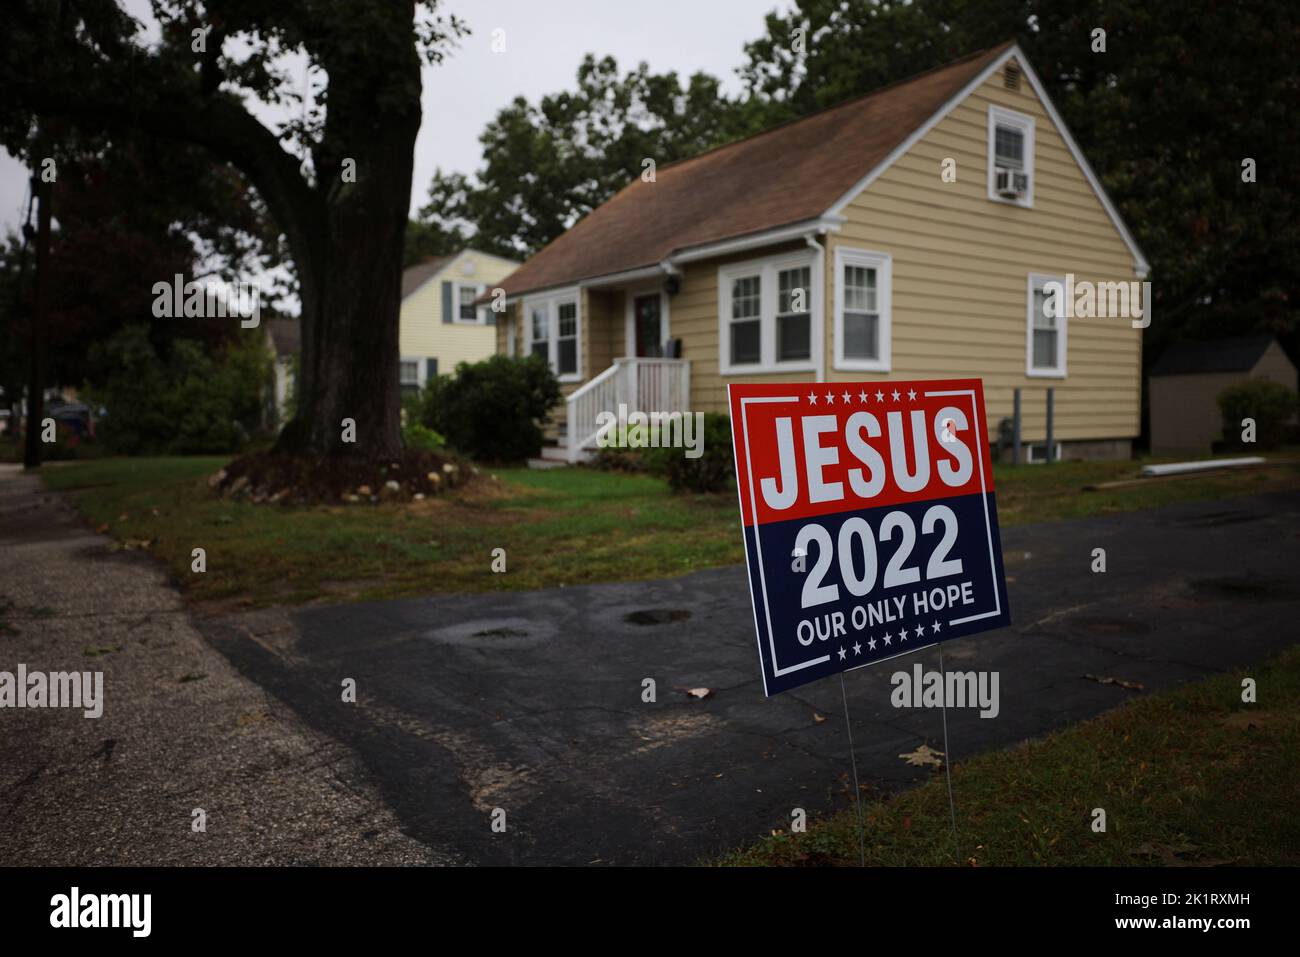 Un panneau de style de campagne politique lisant « Jesus 2022 » se trouve dans un quartier résidentiel de Manchester, New Hampshire, États-Unis, 20 septembre 2022. REUTERS/Brian Snyder Banque D'Images